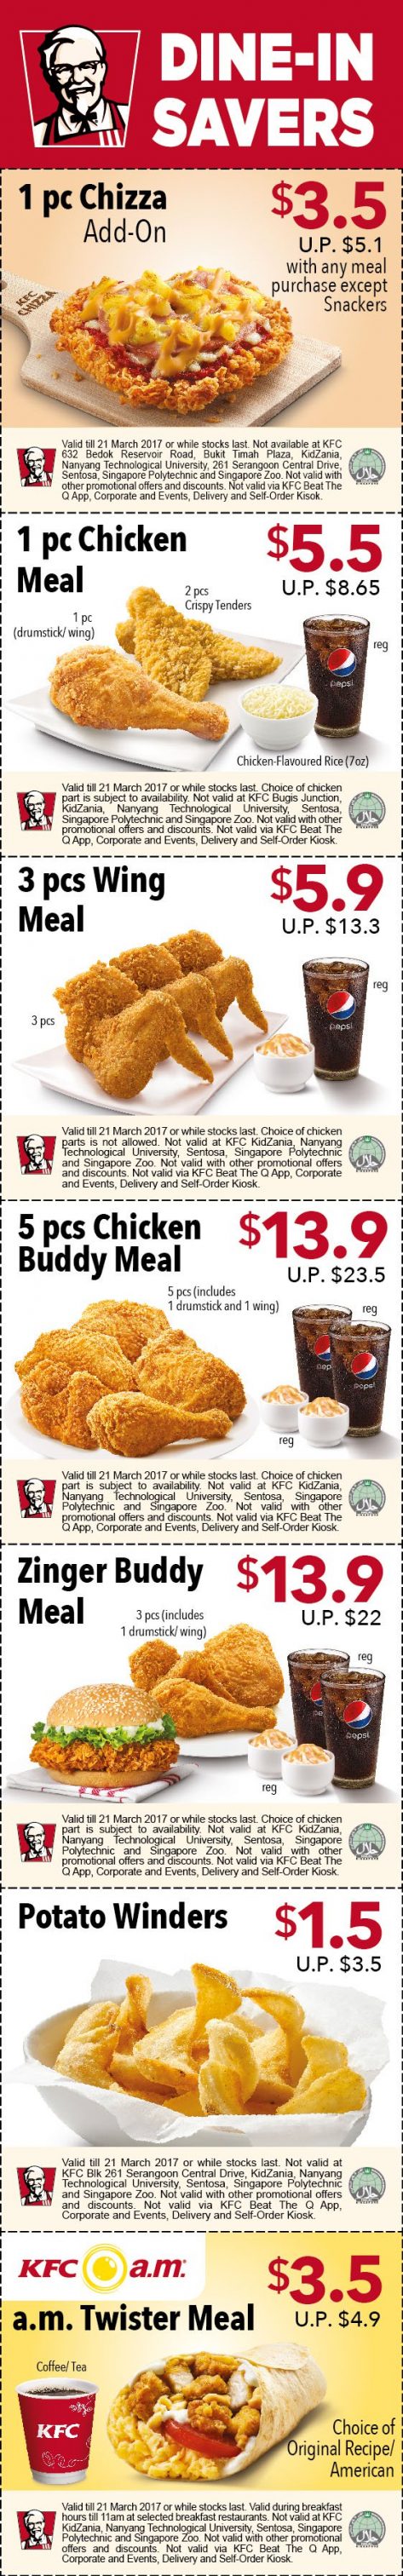 KFC Coupon 7 Feb 17